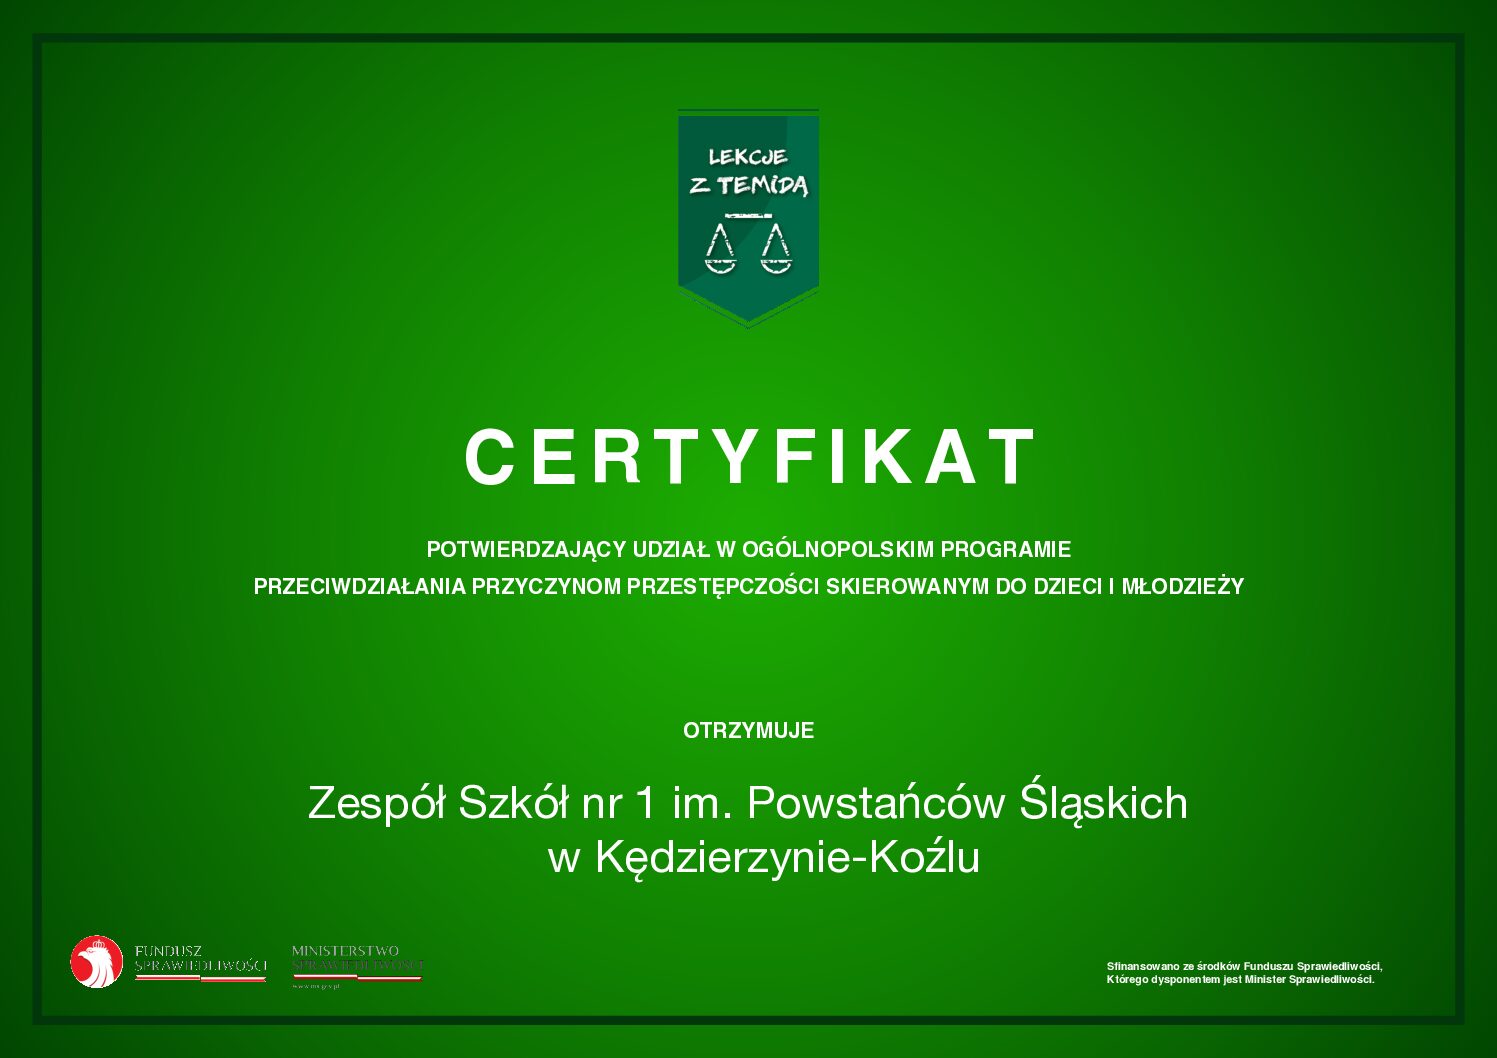 Certyfikat dla ZS nr 1